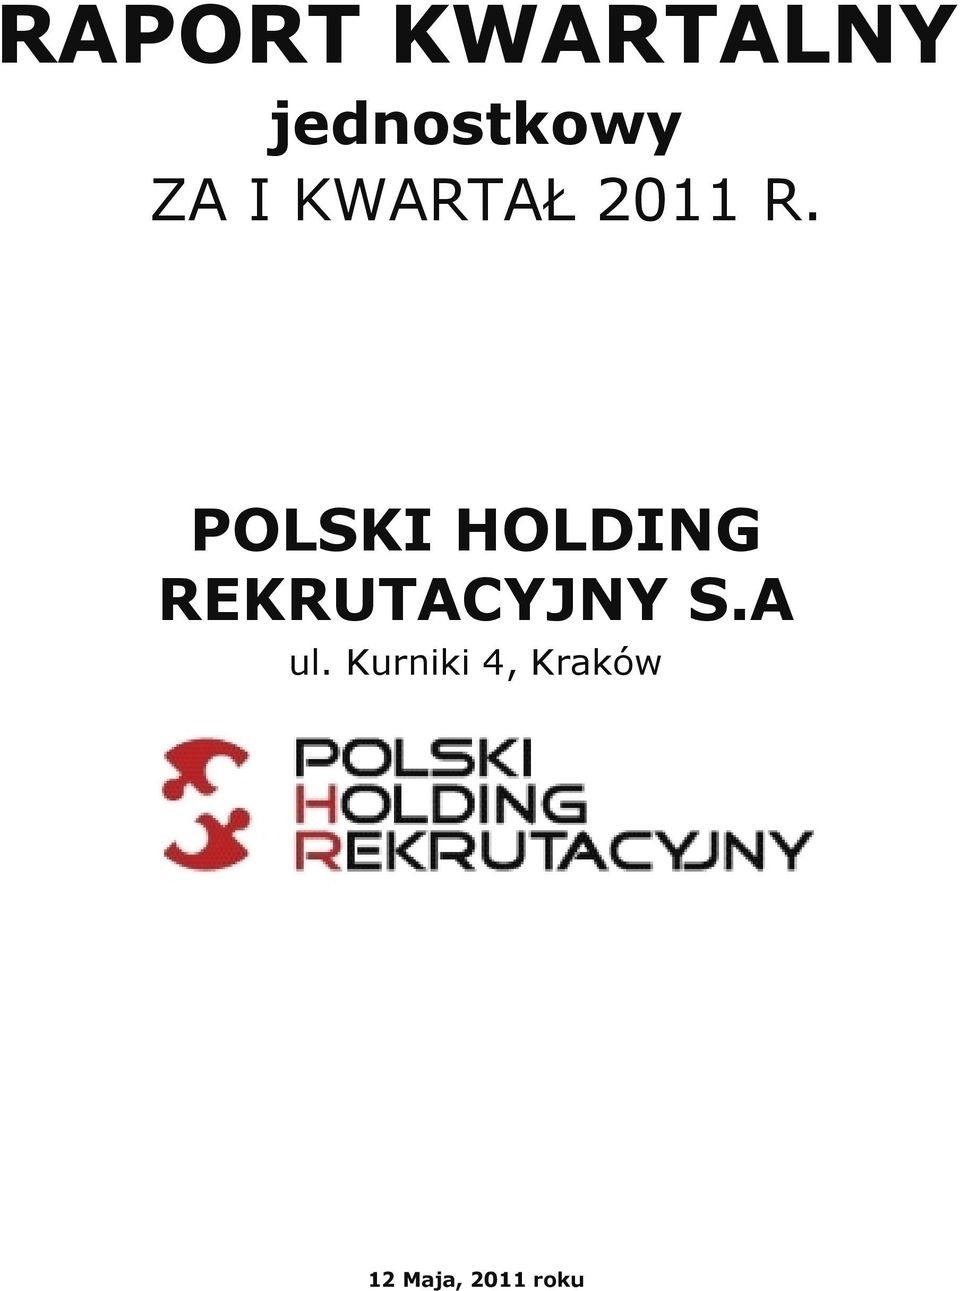 POLSKI HOLDING REKRUTACYJNY S.